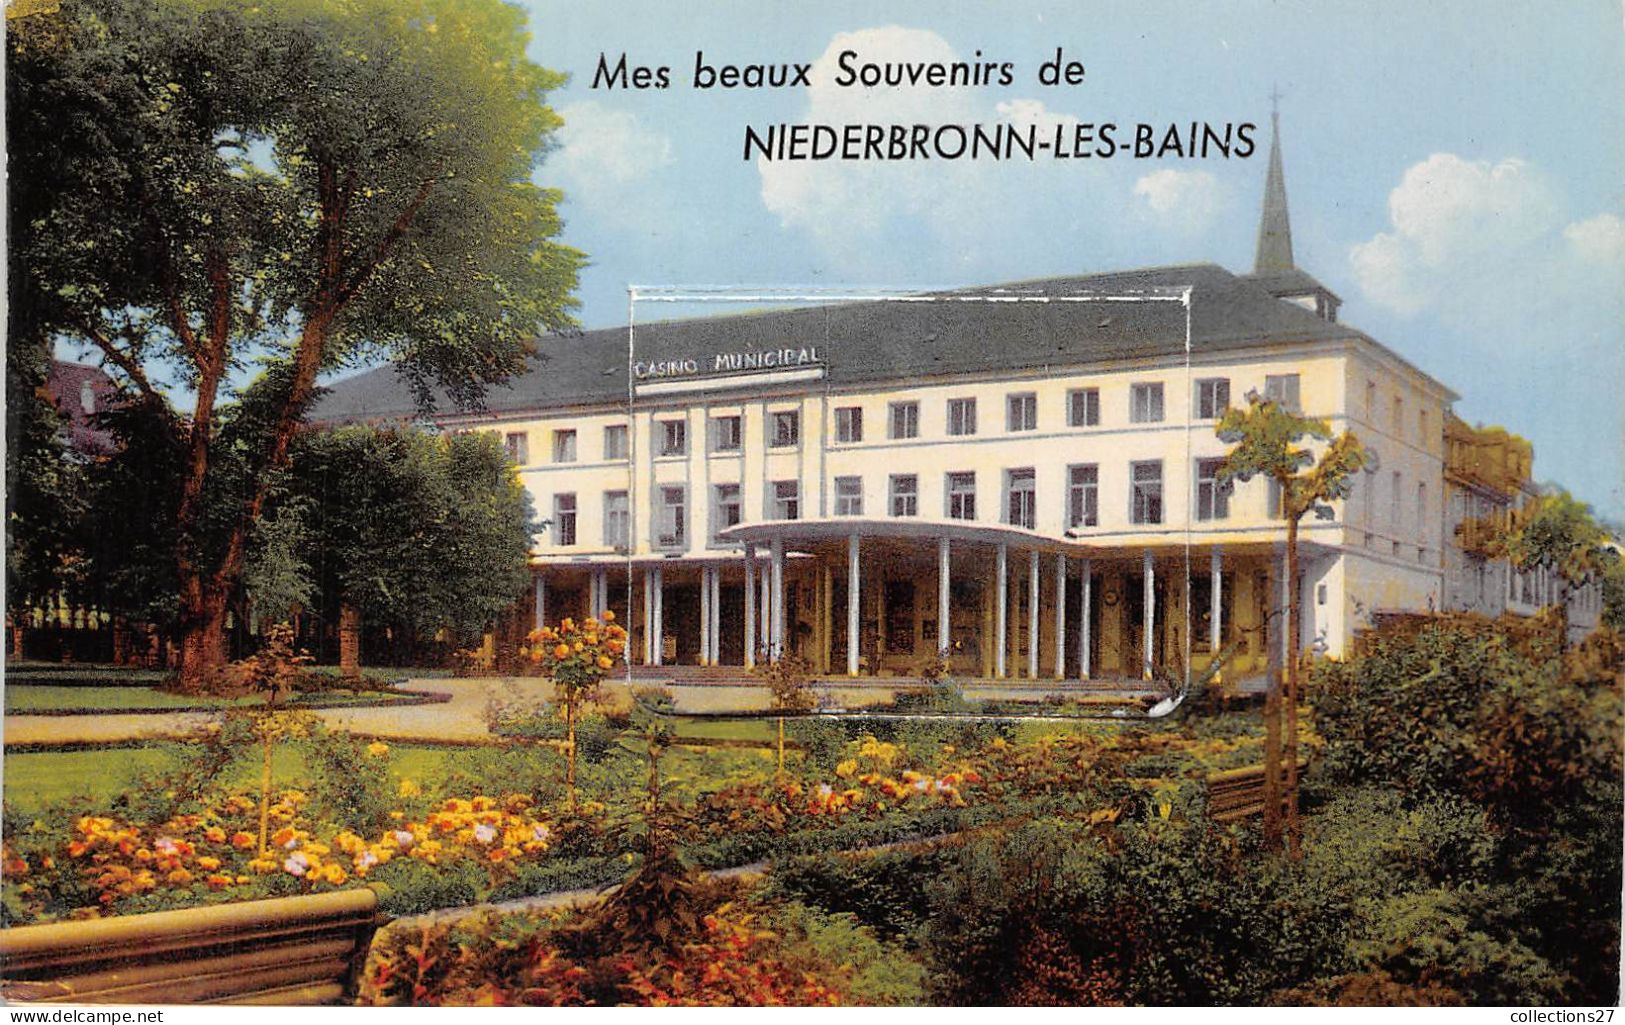 67-NIEDERBRONN-LES-BAINS- CARTE A SYSTEME DEPLIANTE- MES BEAUX SOUVENIR DE NIEDERBRONN-LES-BAINS - Niederbronn Les Bains